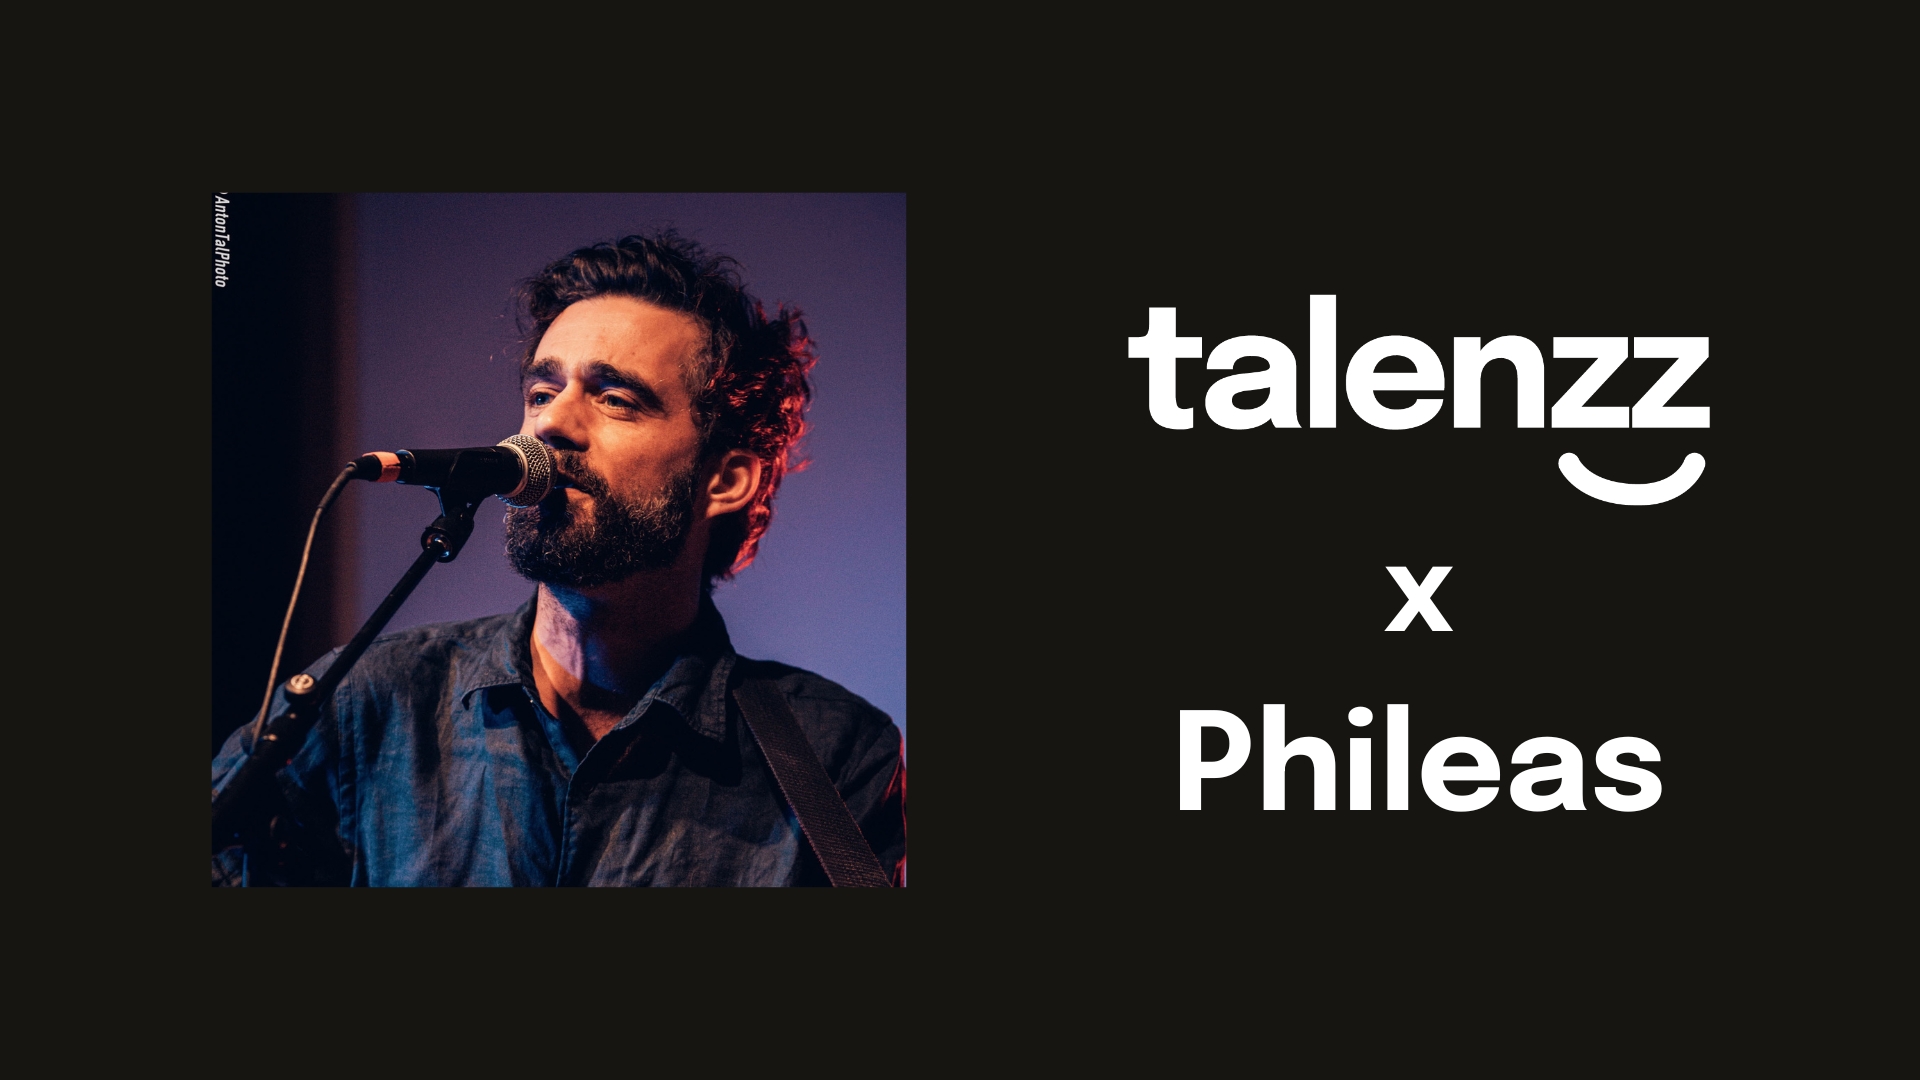 Neuer Musiker "Phileas" auf talenzz! // New musician "Phileas" on talenzz!